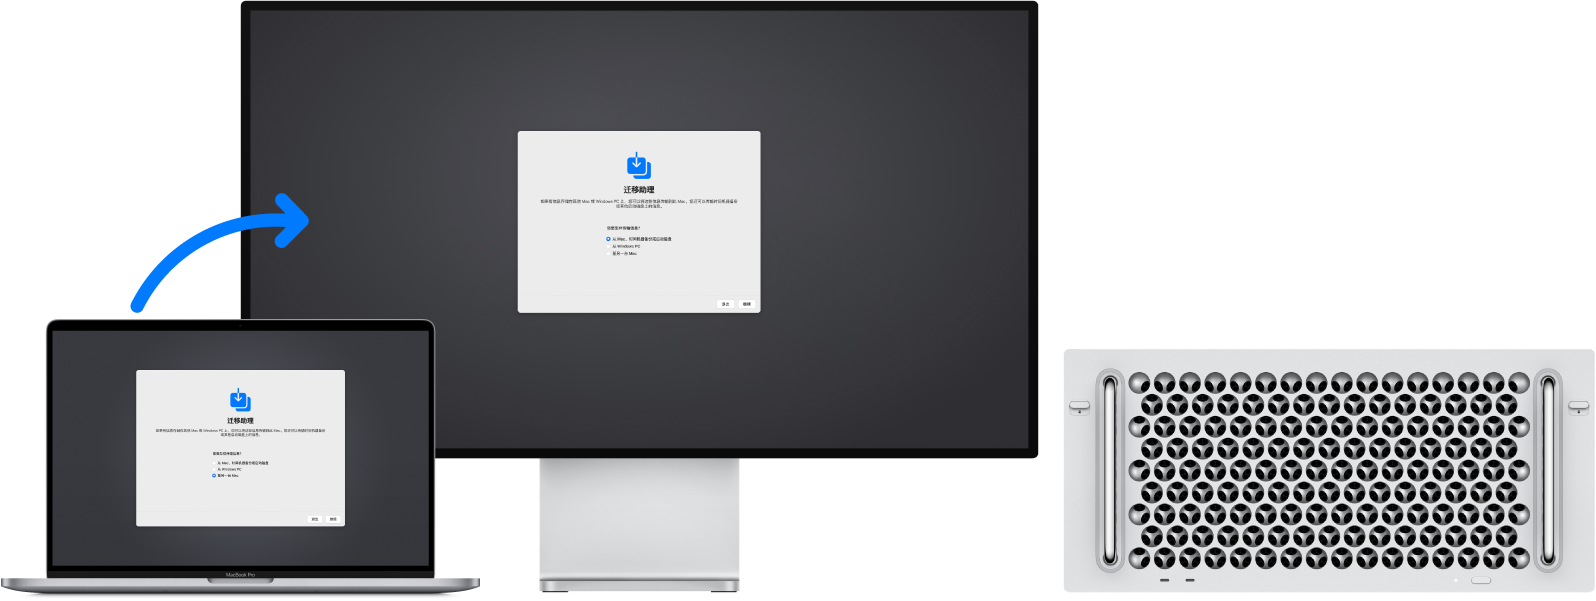 同时显示“迁移助理”屏幕的 MacBook Pro 和 Mac Pro。一个从 MacBook Pro 指向 Mac Pro 的箭头表示数据从 MacBook Pro 传输到 Mac Pro。